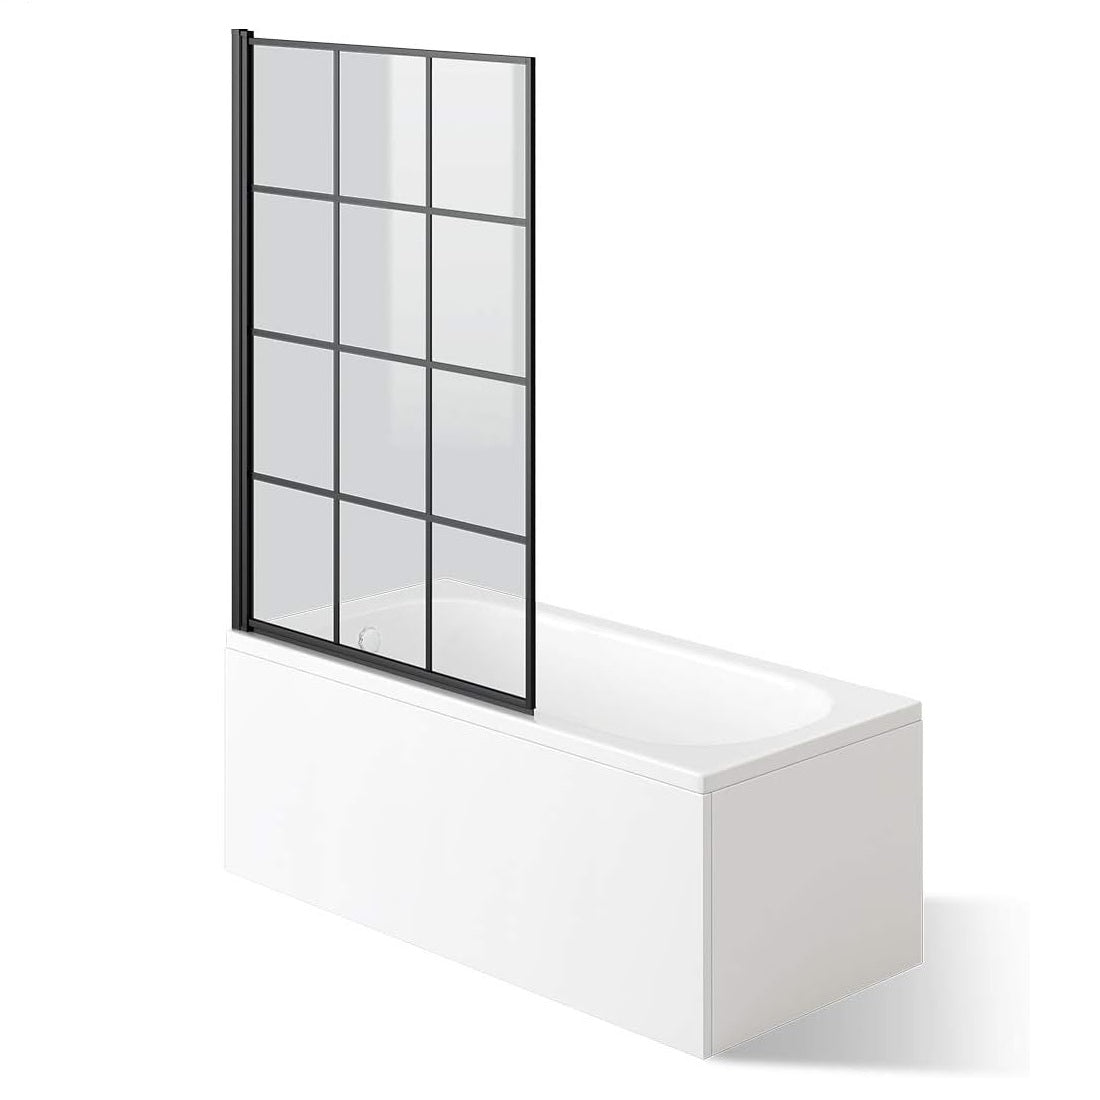 Modern Designer Crittall Folding Shower Bath Screen - 1400mm x 1000mm - Matt Black